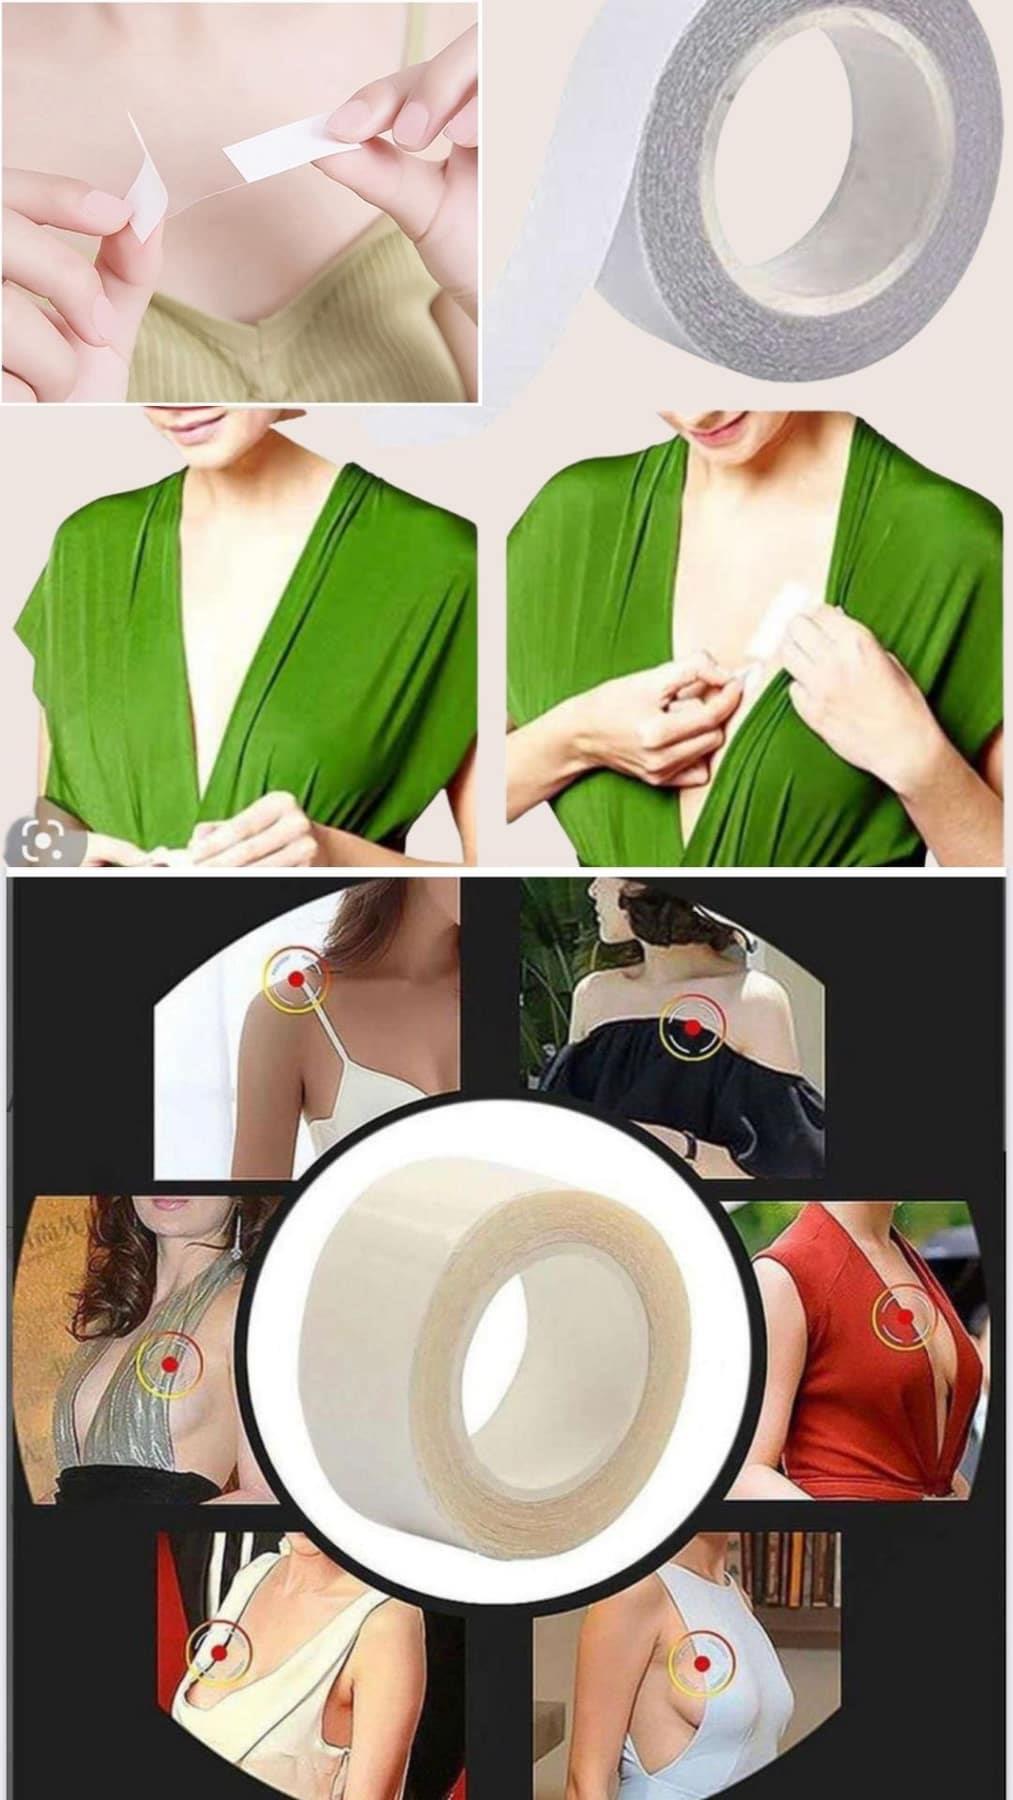 Brust aufrecht Kleid unten Ausschnitt Produkt Zubehör transparentes Band Hm85227